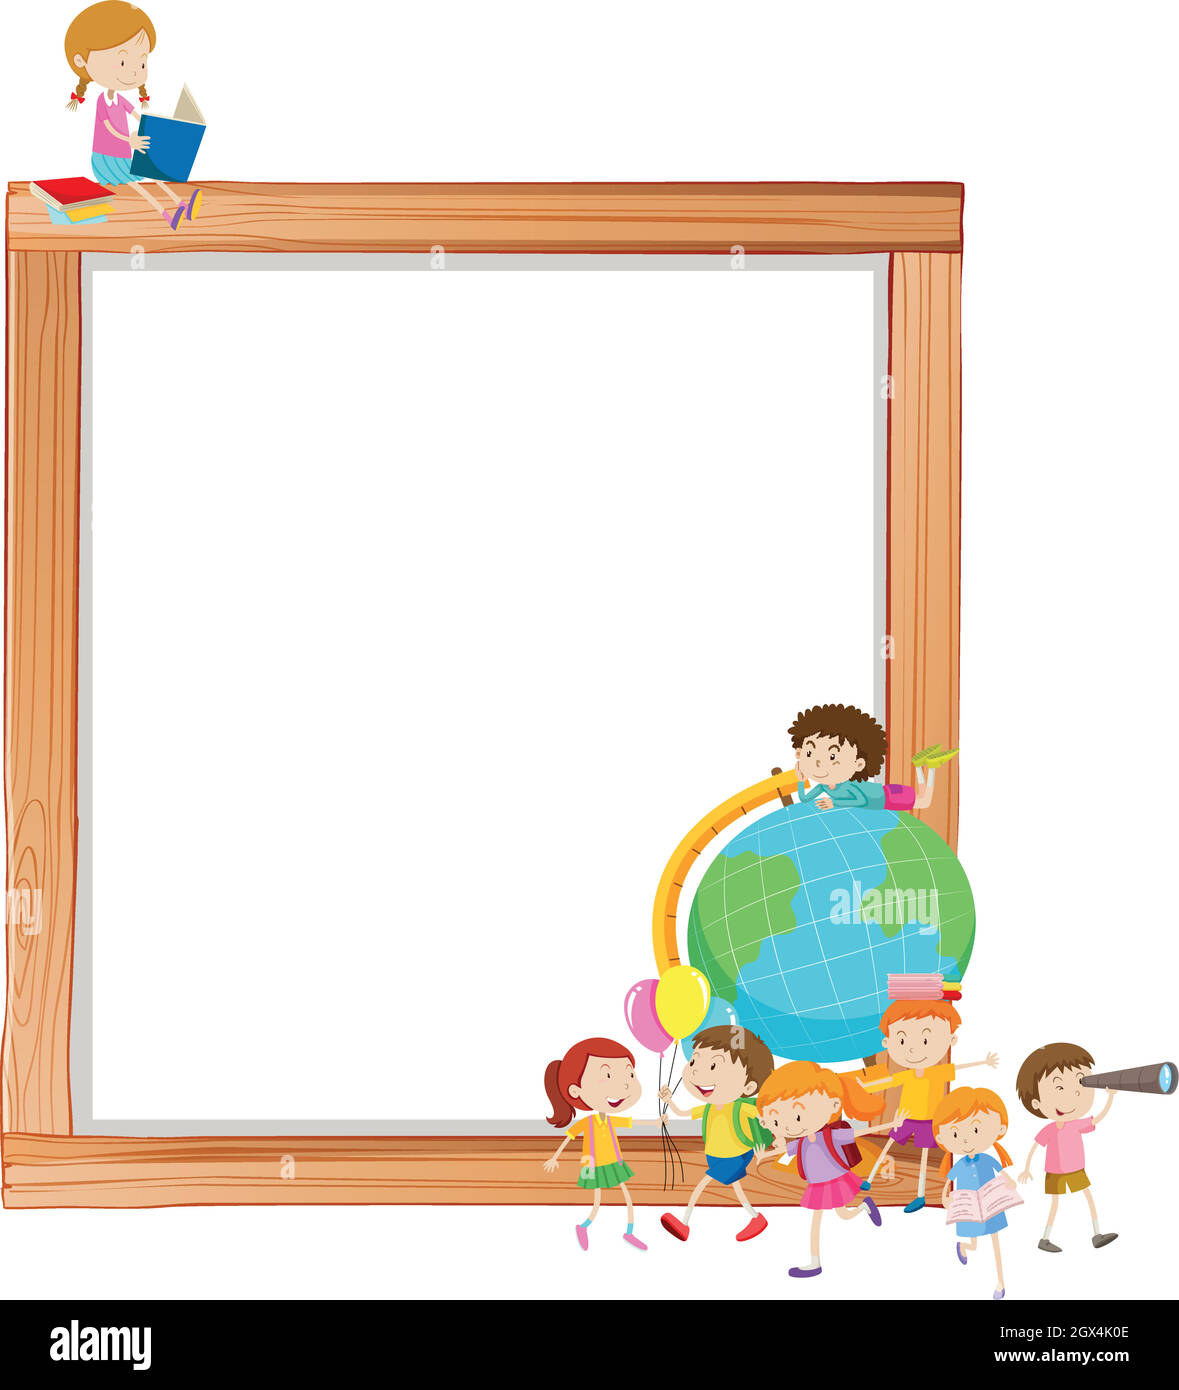 Children on wooden frame Stock Vector